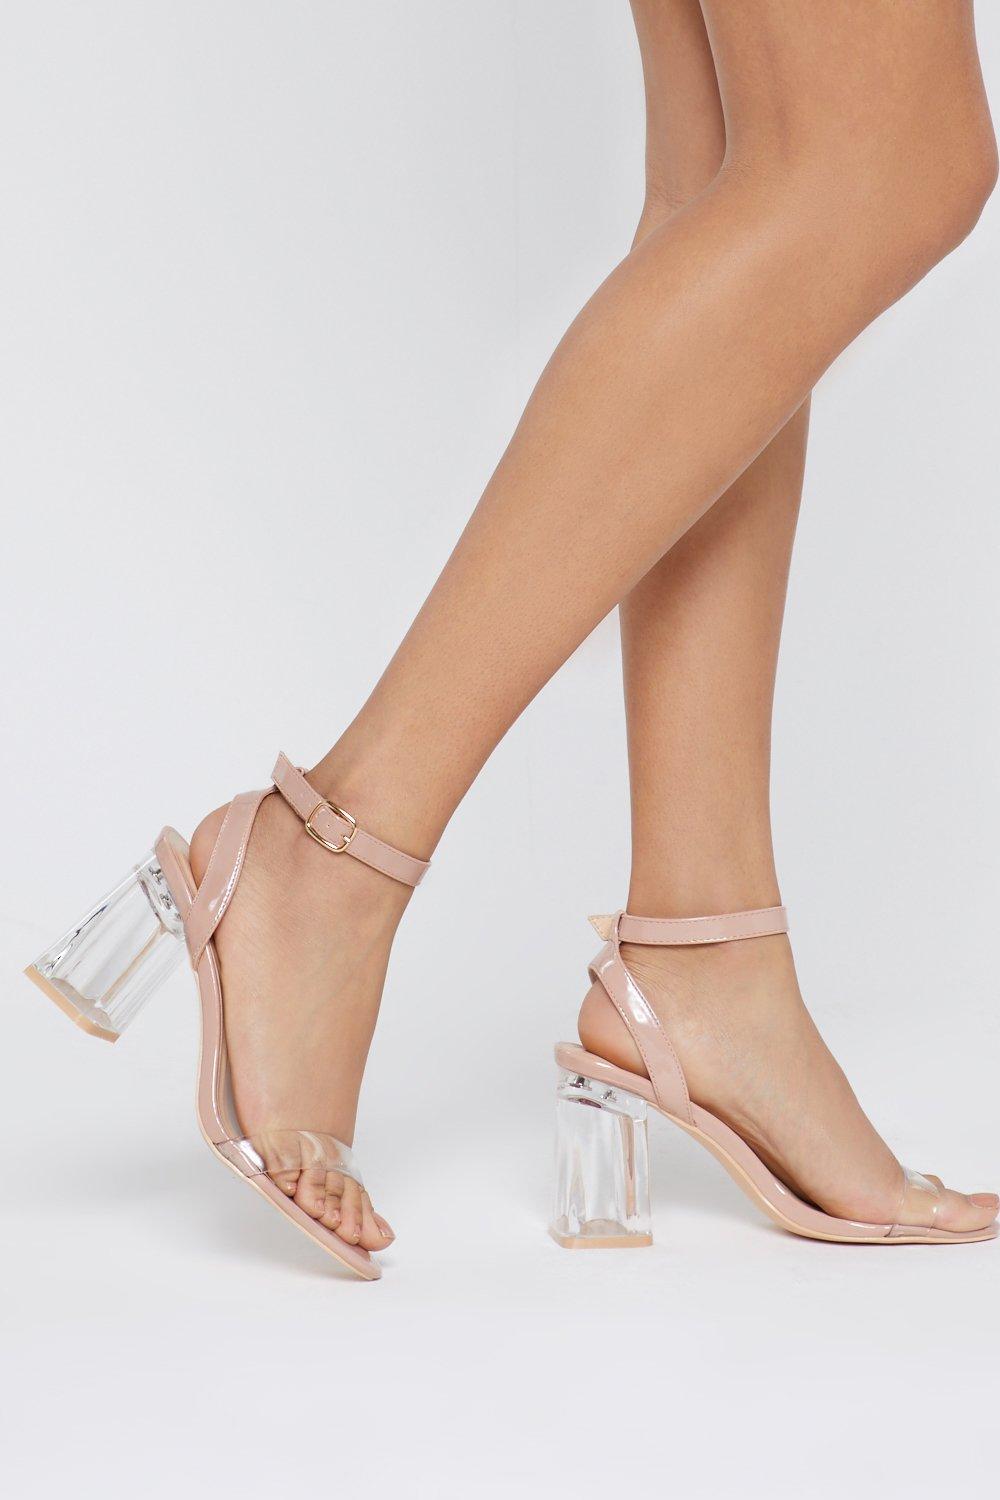 clear heel high heels